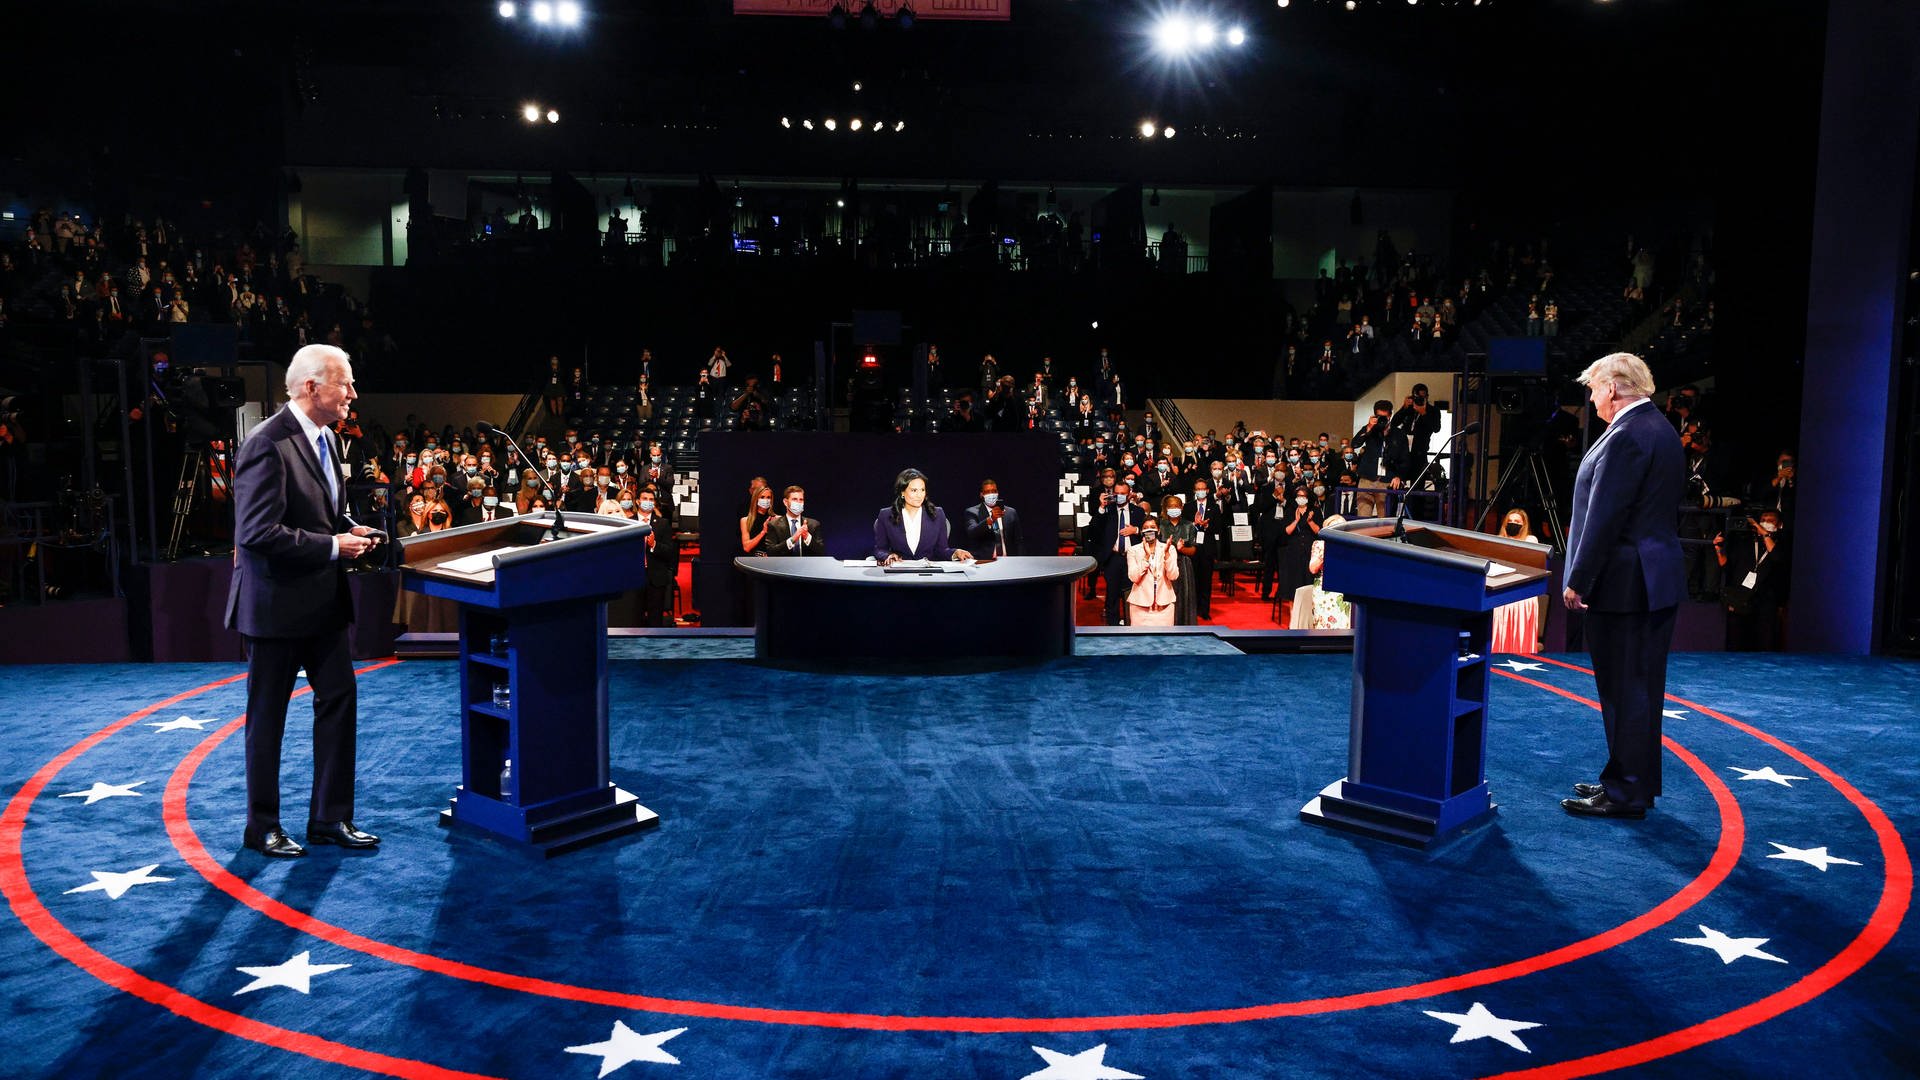 Die Wirksamkeit der TV-Duelle: Wahlkampf und Wortgefecht